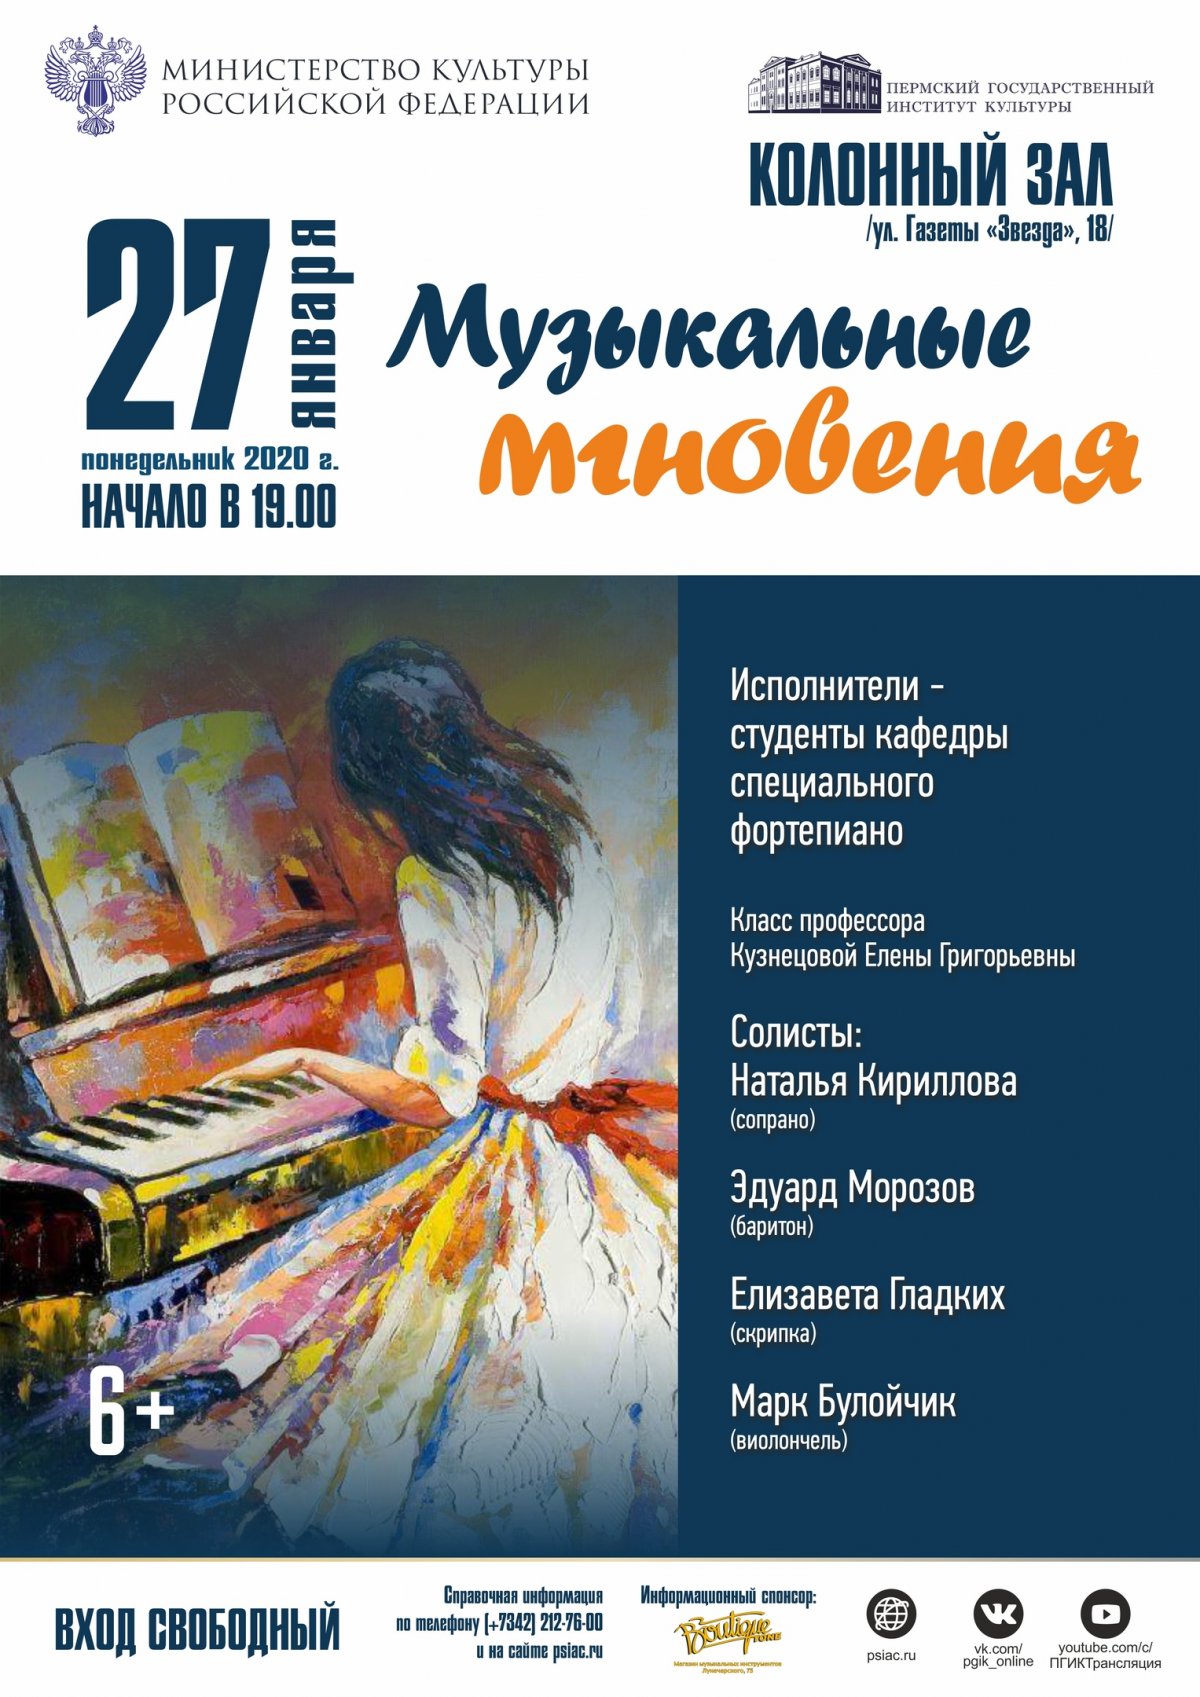 Консерватория Пермского государственного института культуры, кафедра специального фортепиано приглашают